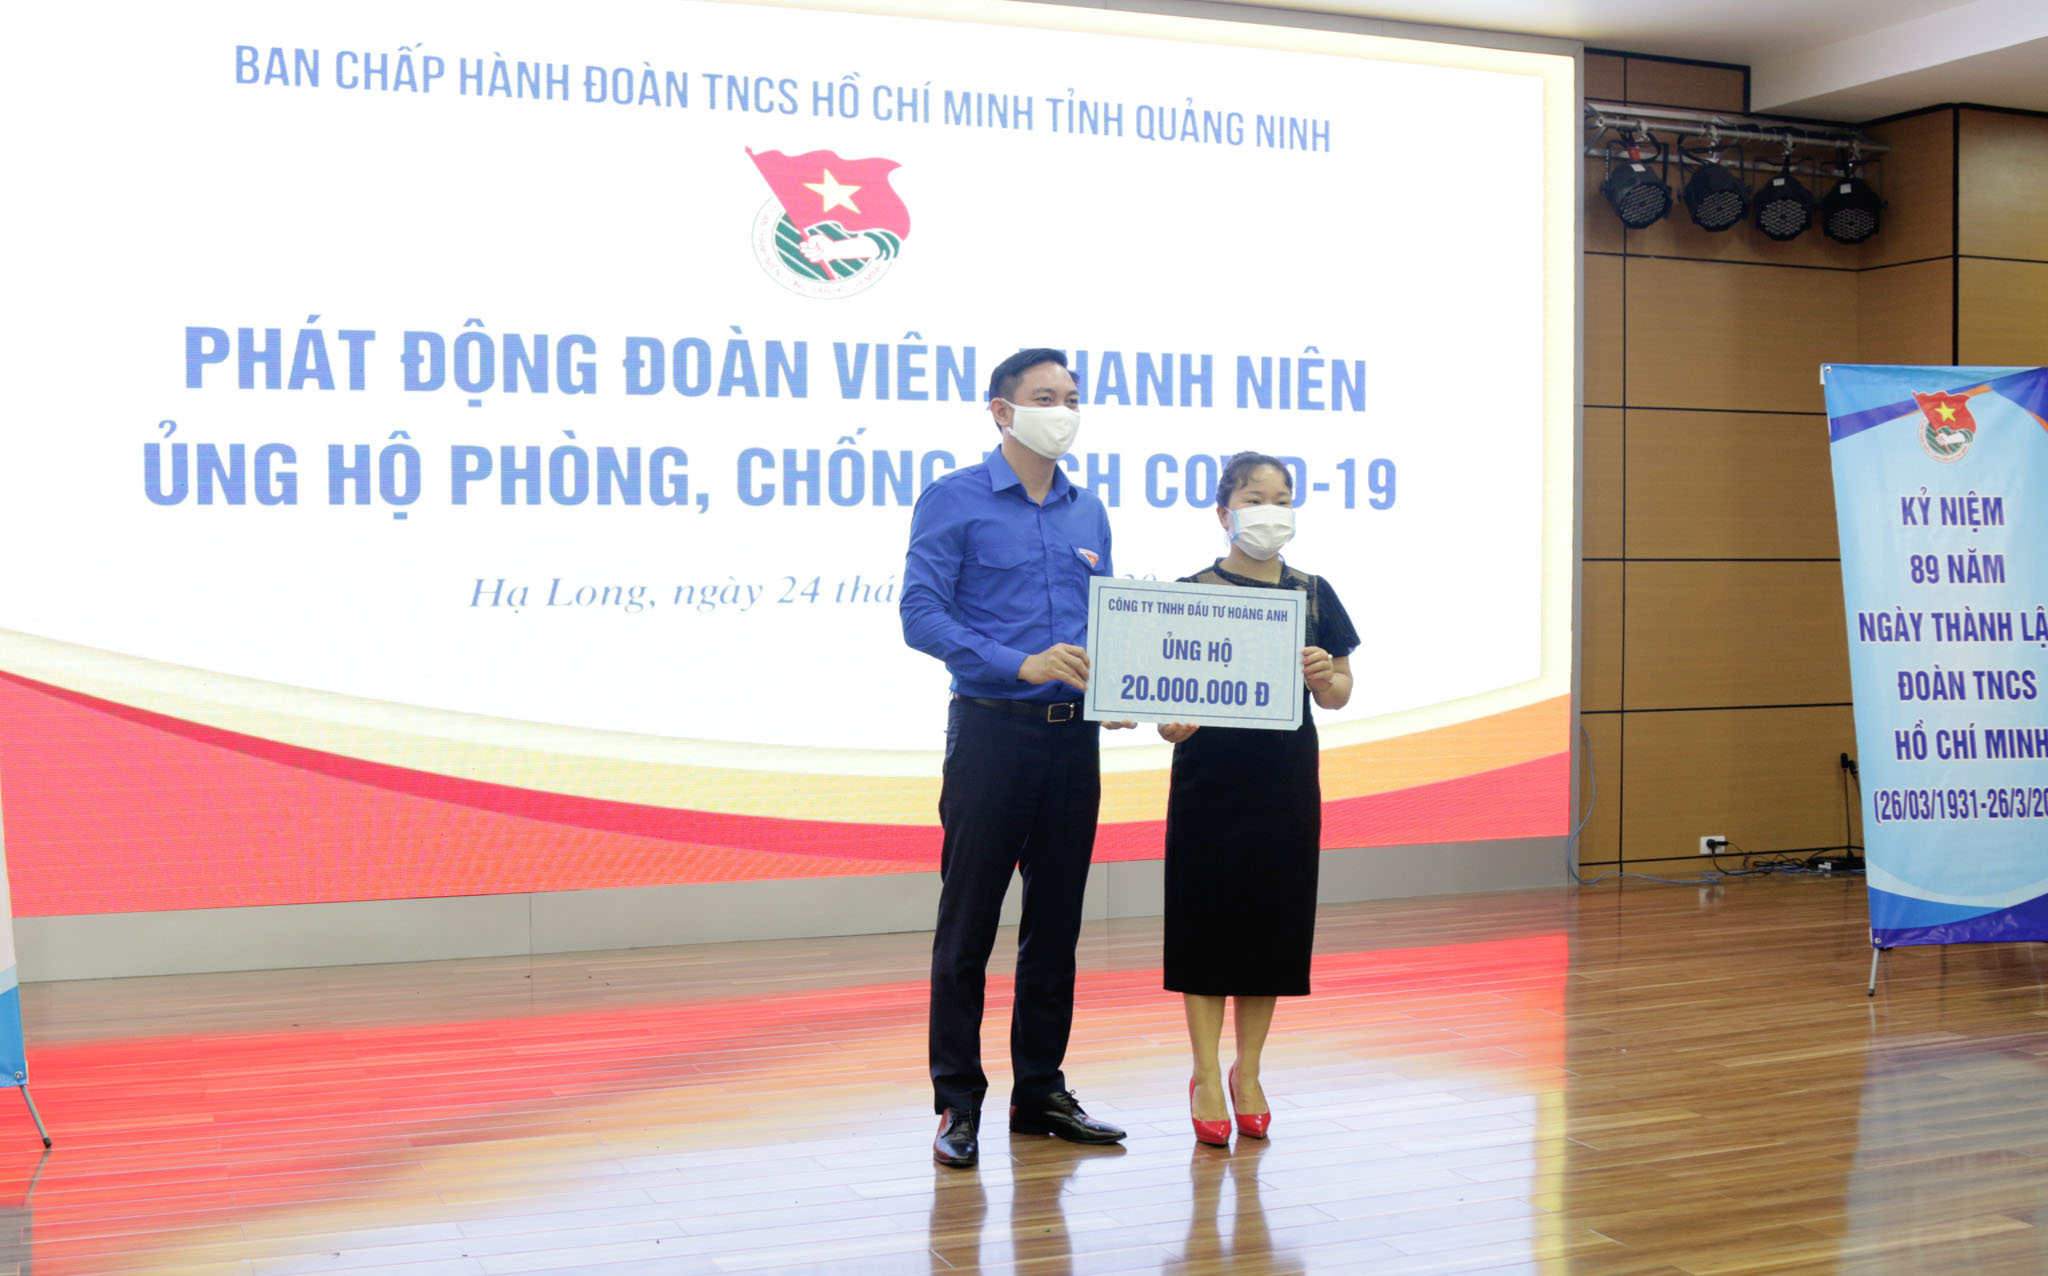 Tỉnh đoàn Quảng Ninh tiếp nhận ủng hộ quỹ Covid- 19 từ công ty TNHH Hoàng Anh.